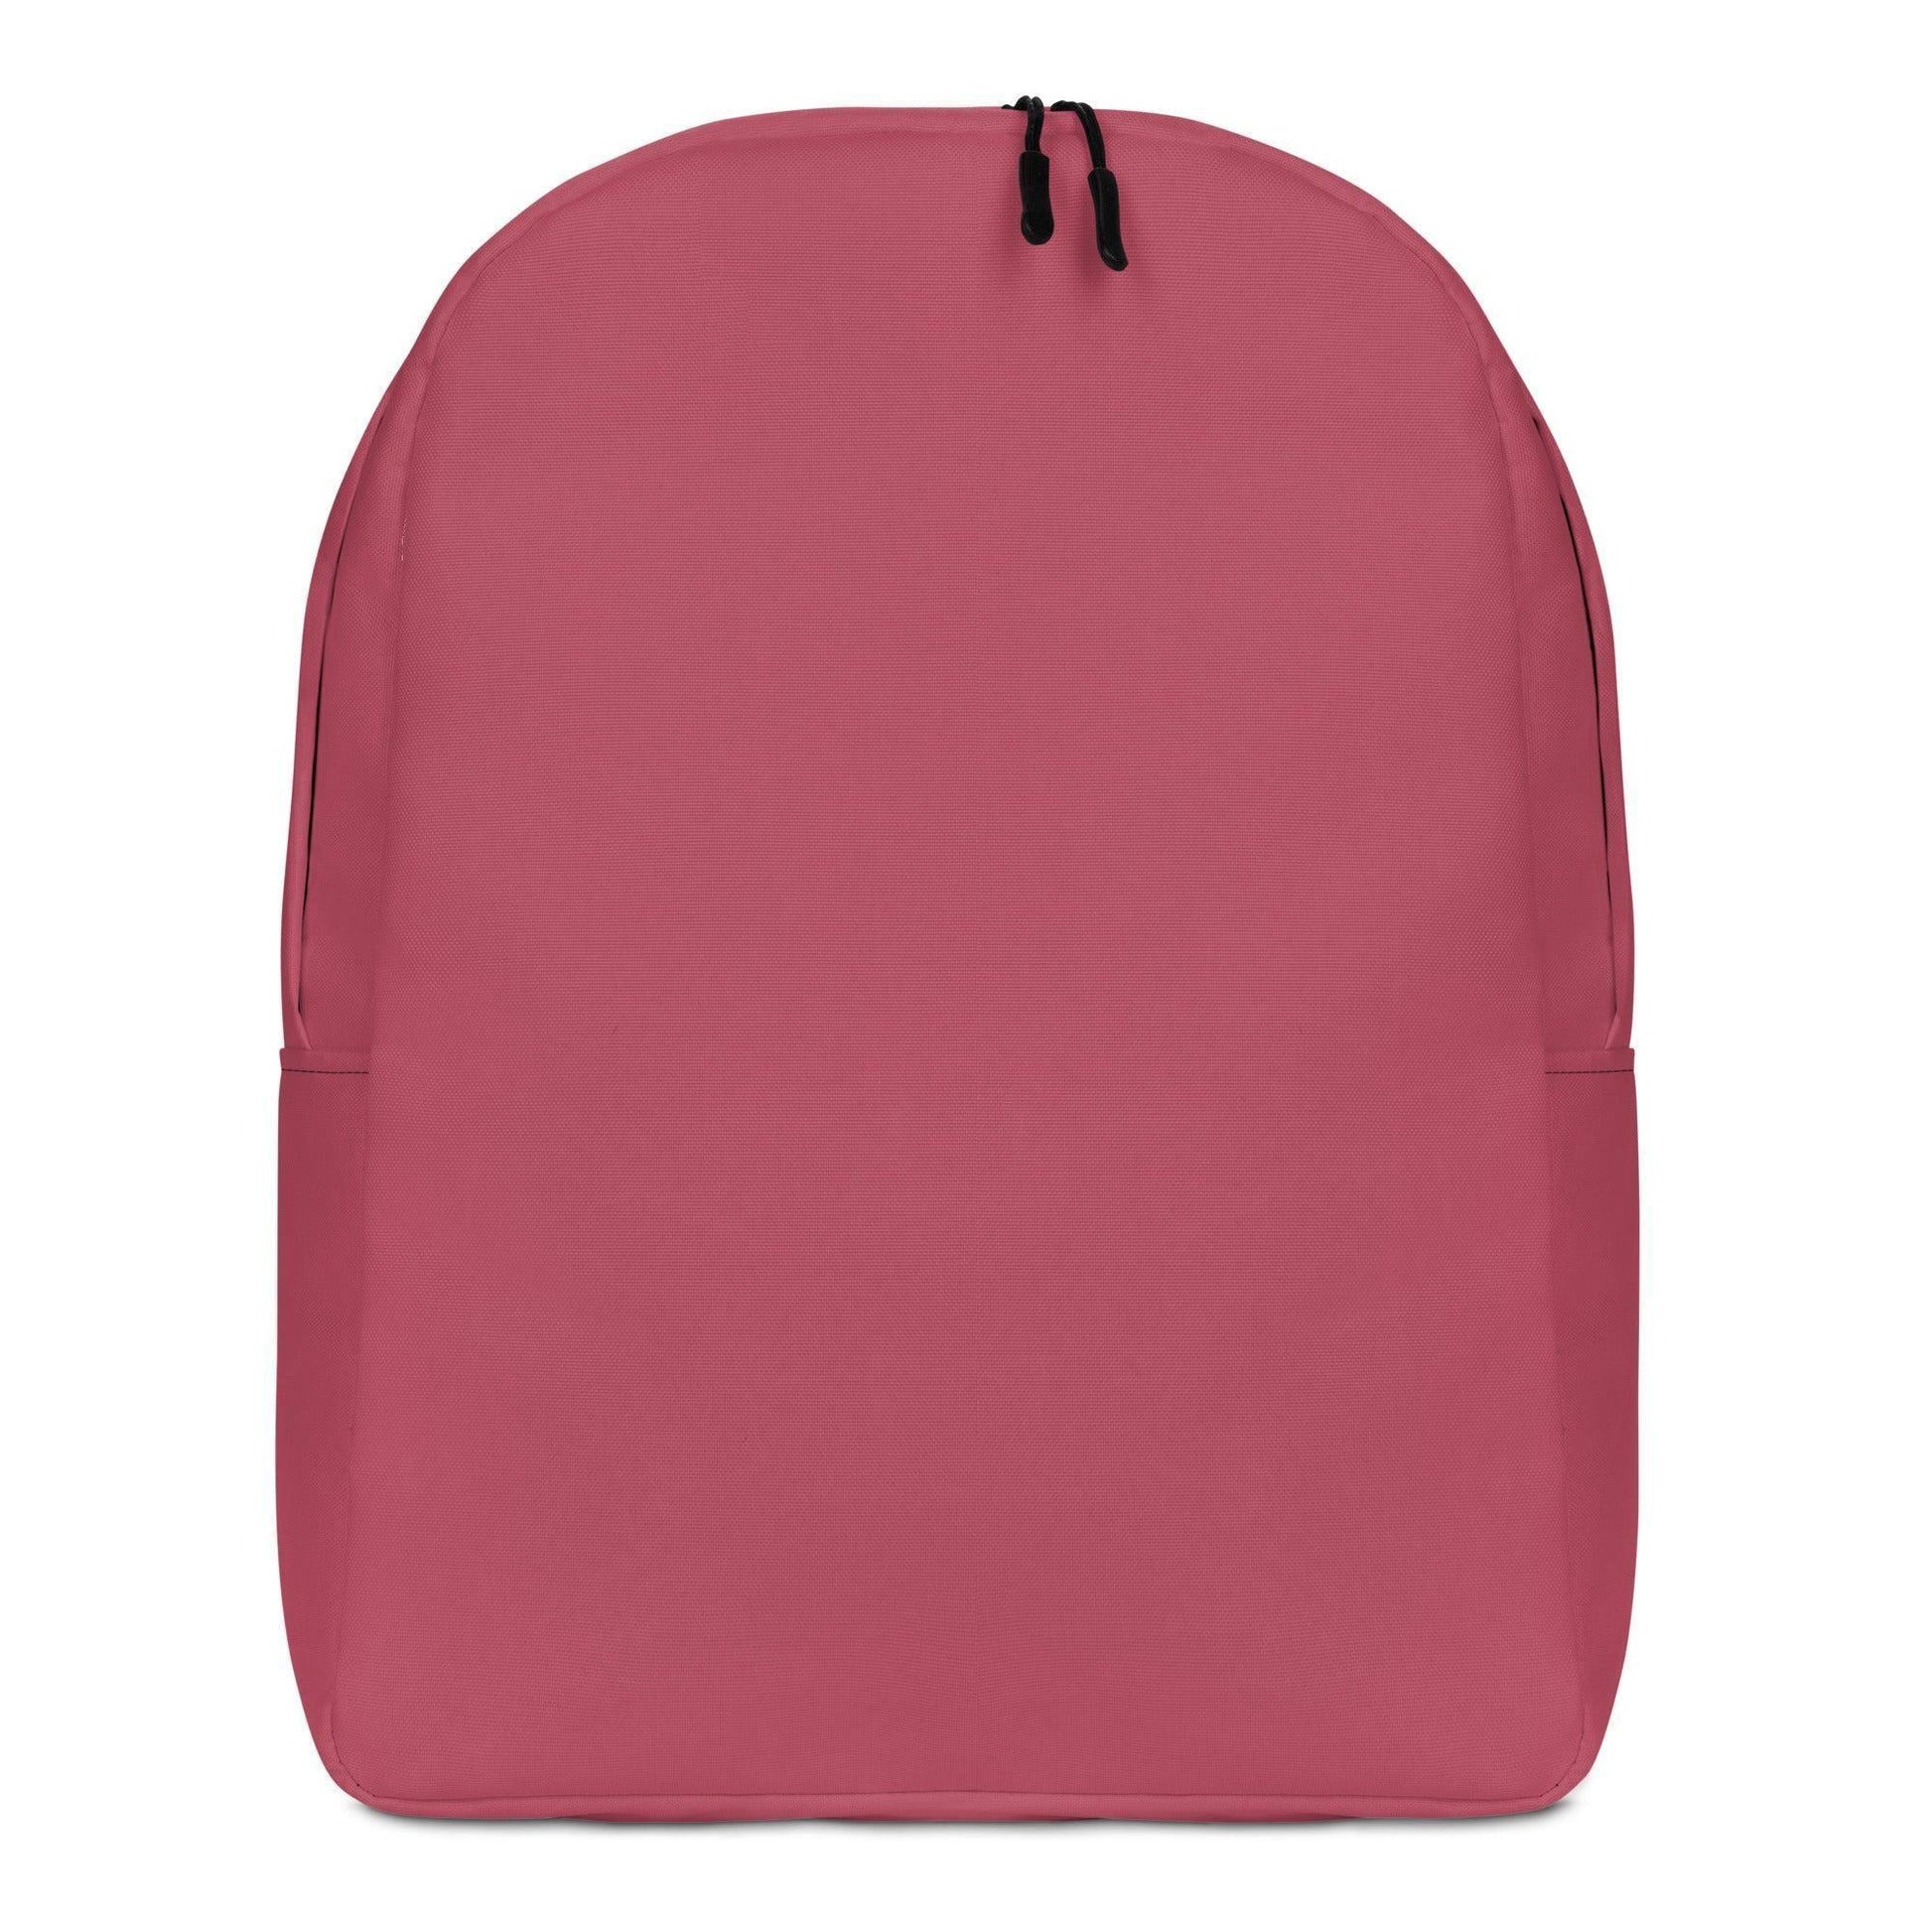 Hippie Pink Rucksack -- Hippie Pink Rucksack - undefined Rucksack | JLR Design